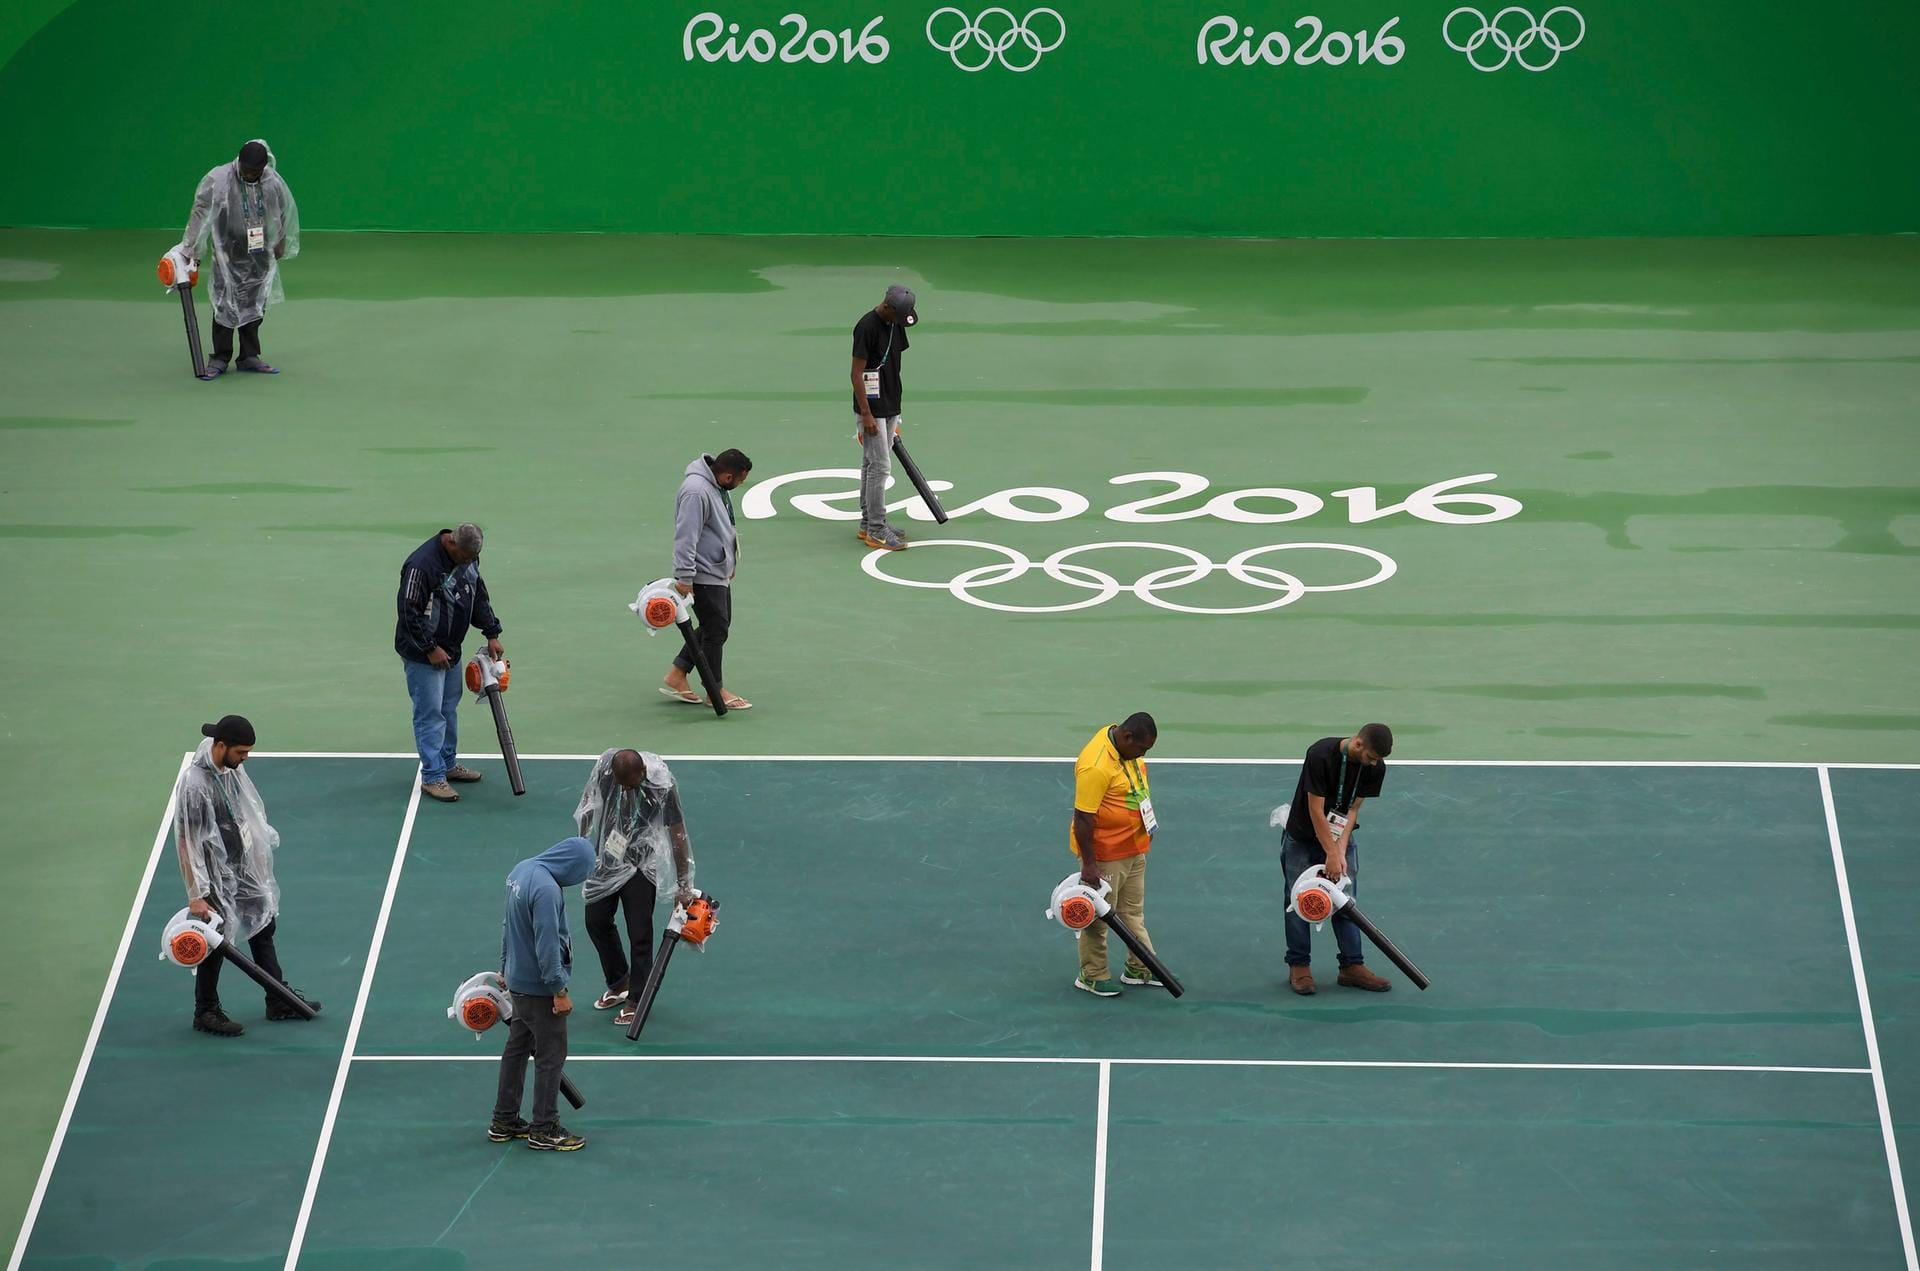 Laubbläser in geheimer Mission: Auch die Tennis-Wettbewerbe mussten wetterbedingt nach hinten verschoben werden. Die Organisatoren setzten auf eine altbekannte Methode, um die Courts bespielbar zu machen.